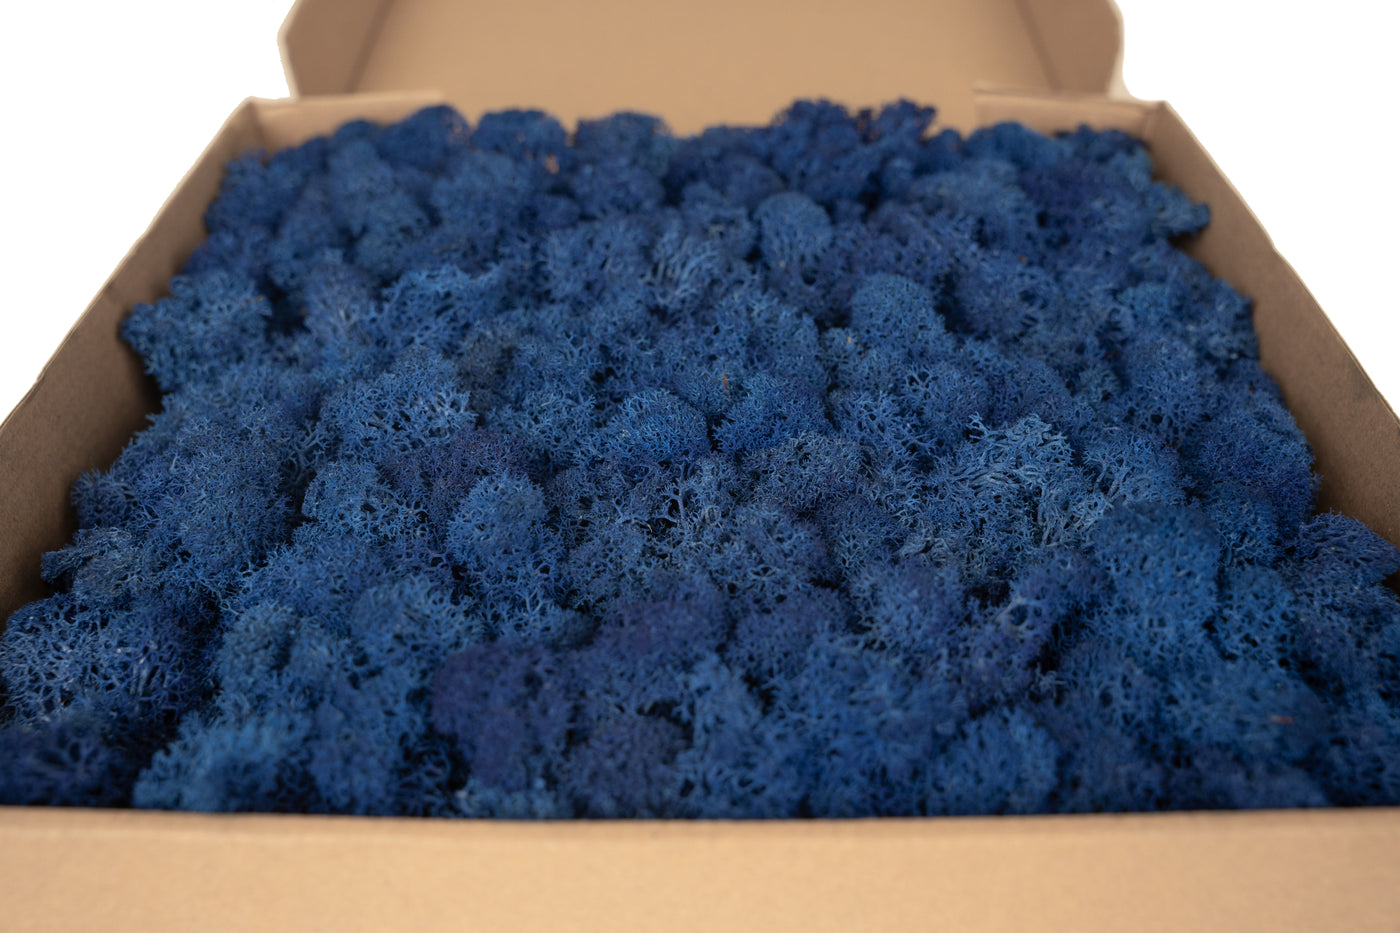 Panou licheni conservati 30x30 cm albastru cobalt